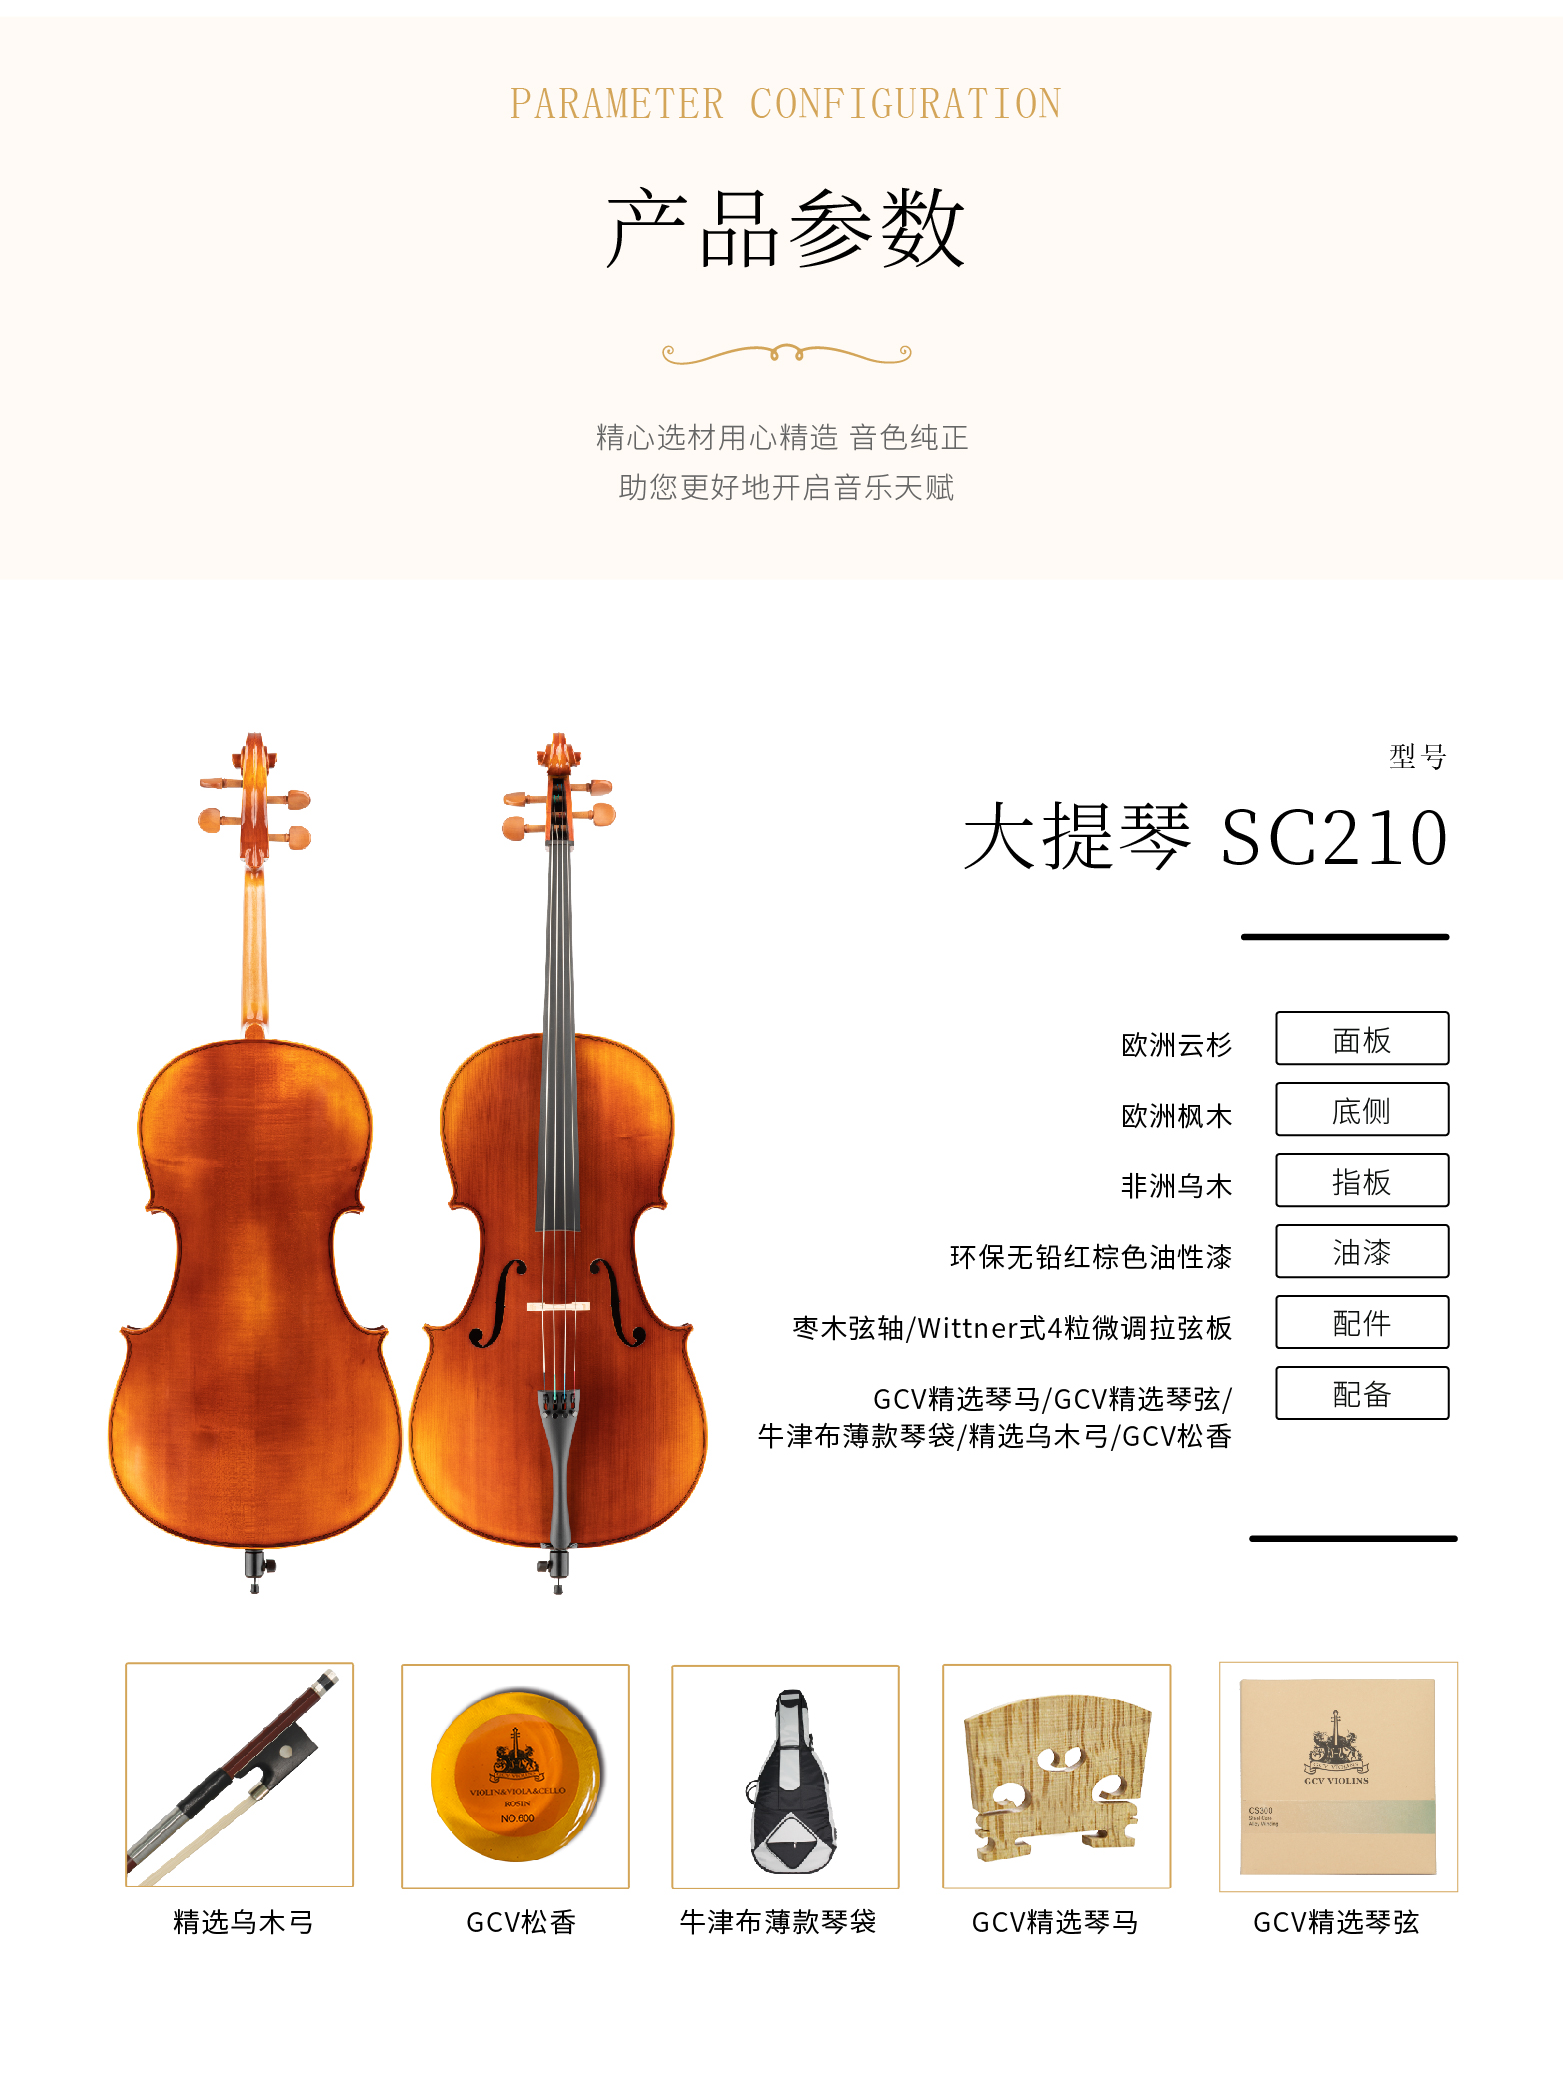 熙珑乐器专营店-详情-v1-2_SC210大提琴_复制_PC-副本-2_03.png